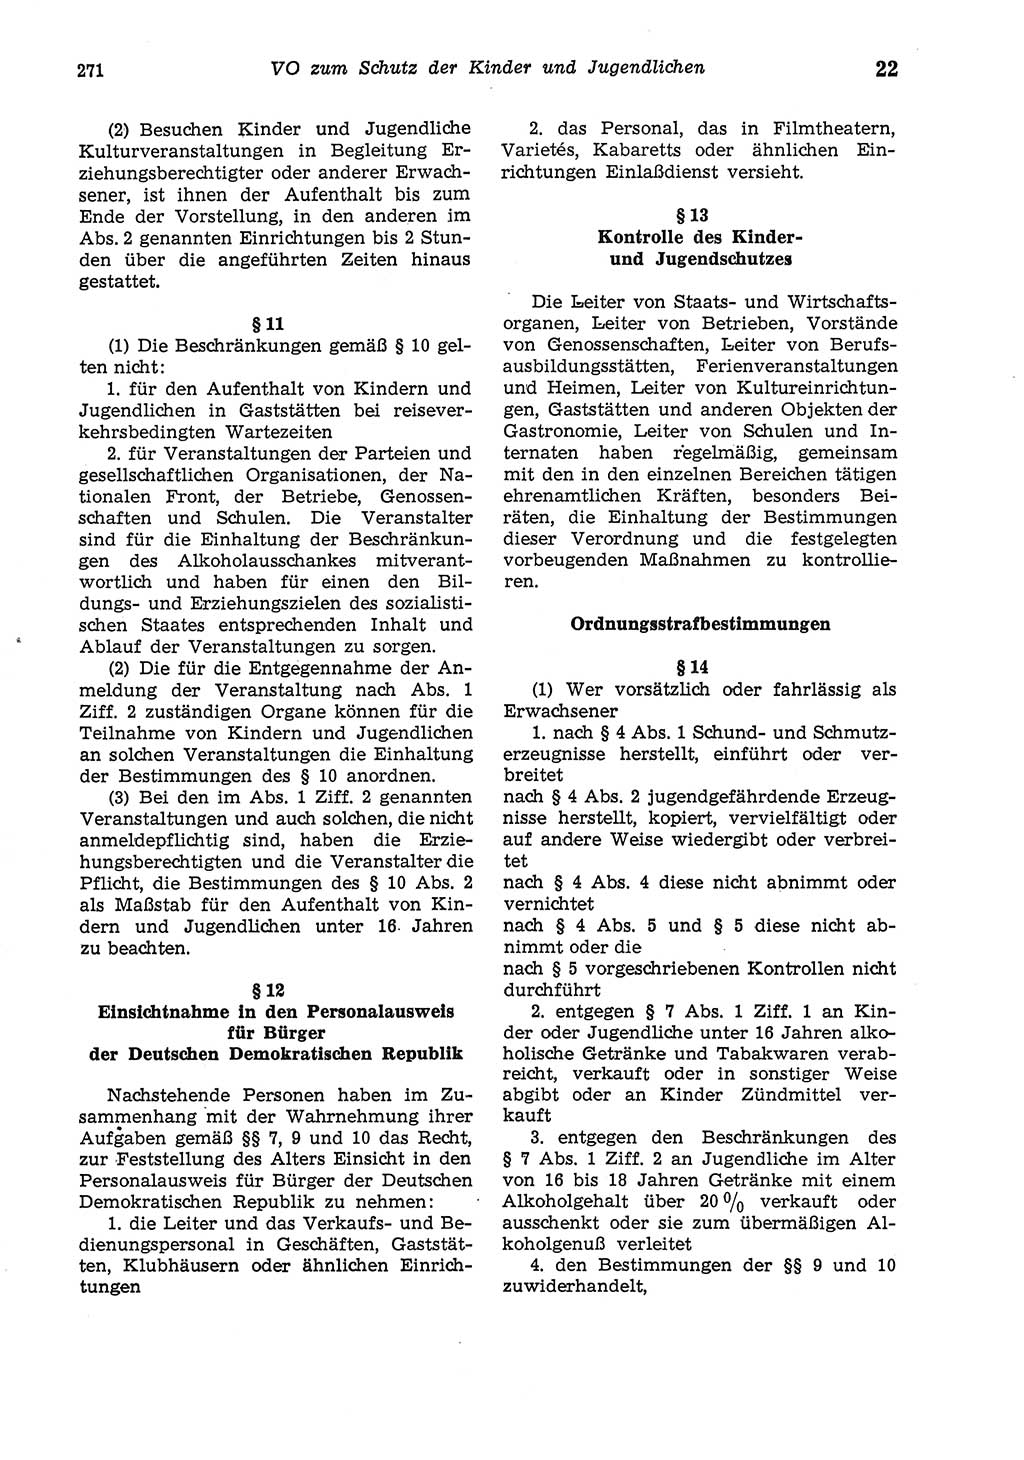 Strafgesetzbuch (StGB) der Deutschen Demokratischen Republik (DDR) und angrenzende Gesetze und Bestimmungen 1975, Seite 271 (StGB DDR Ges. Best. 1975, S. 271)